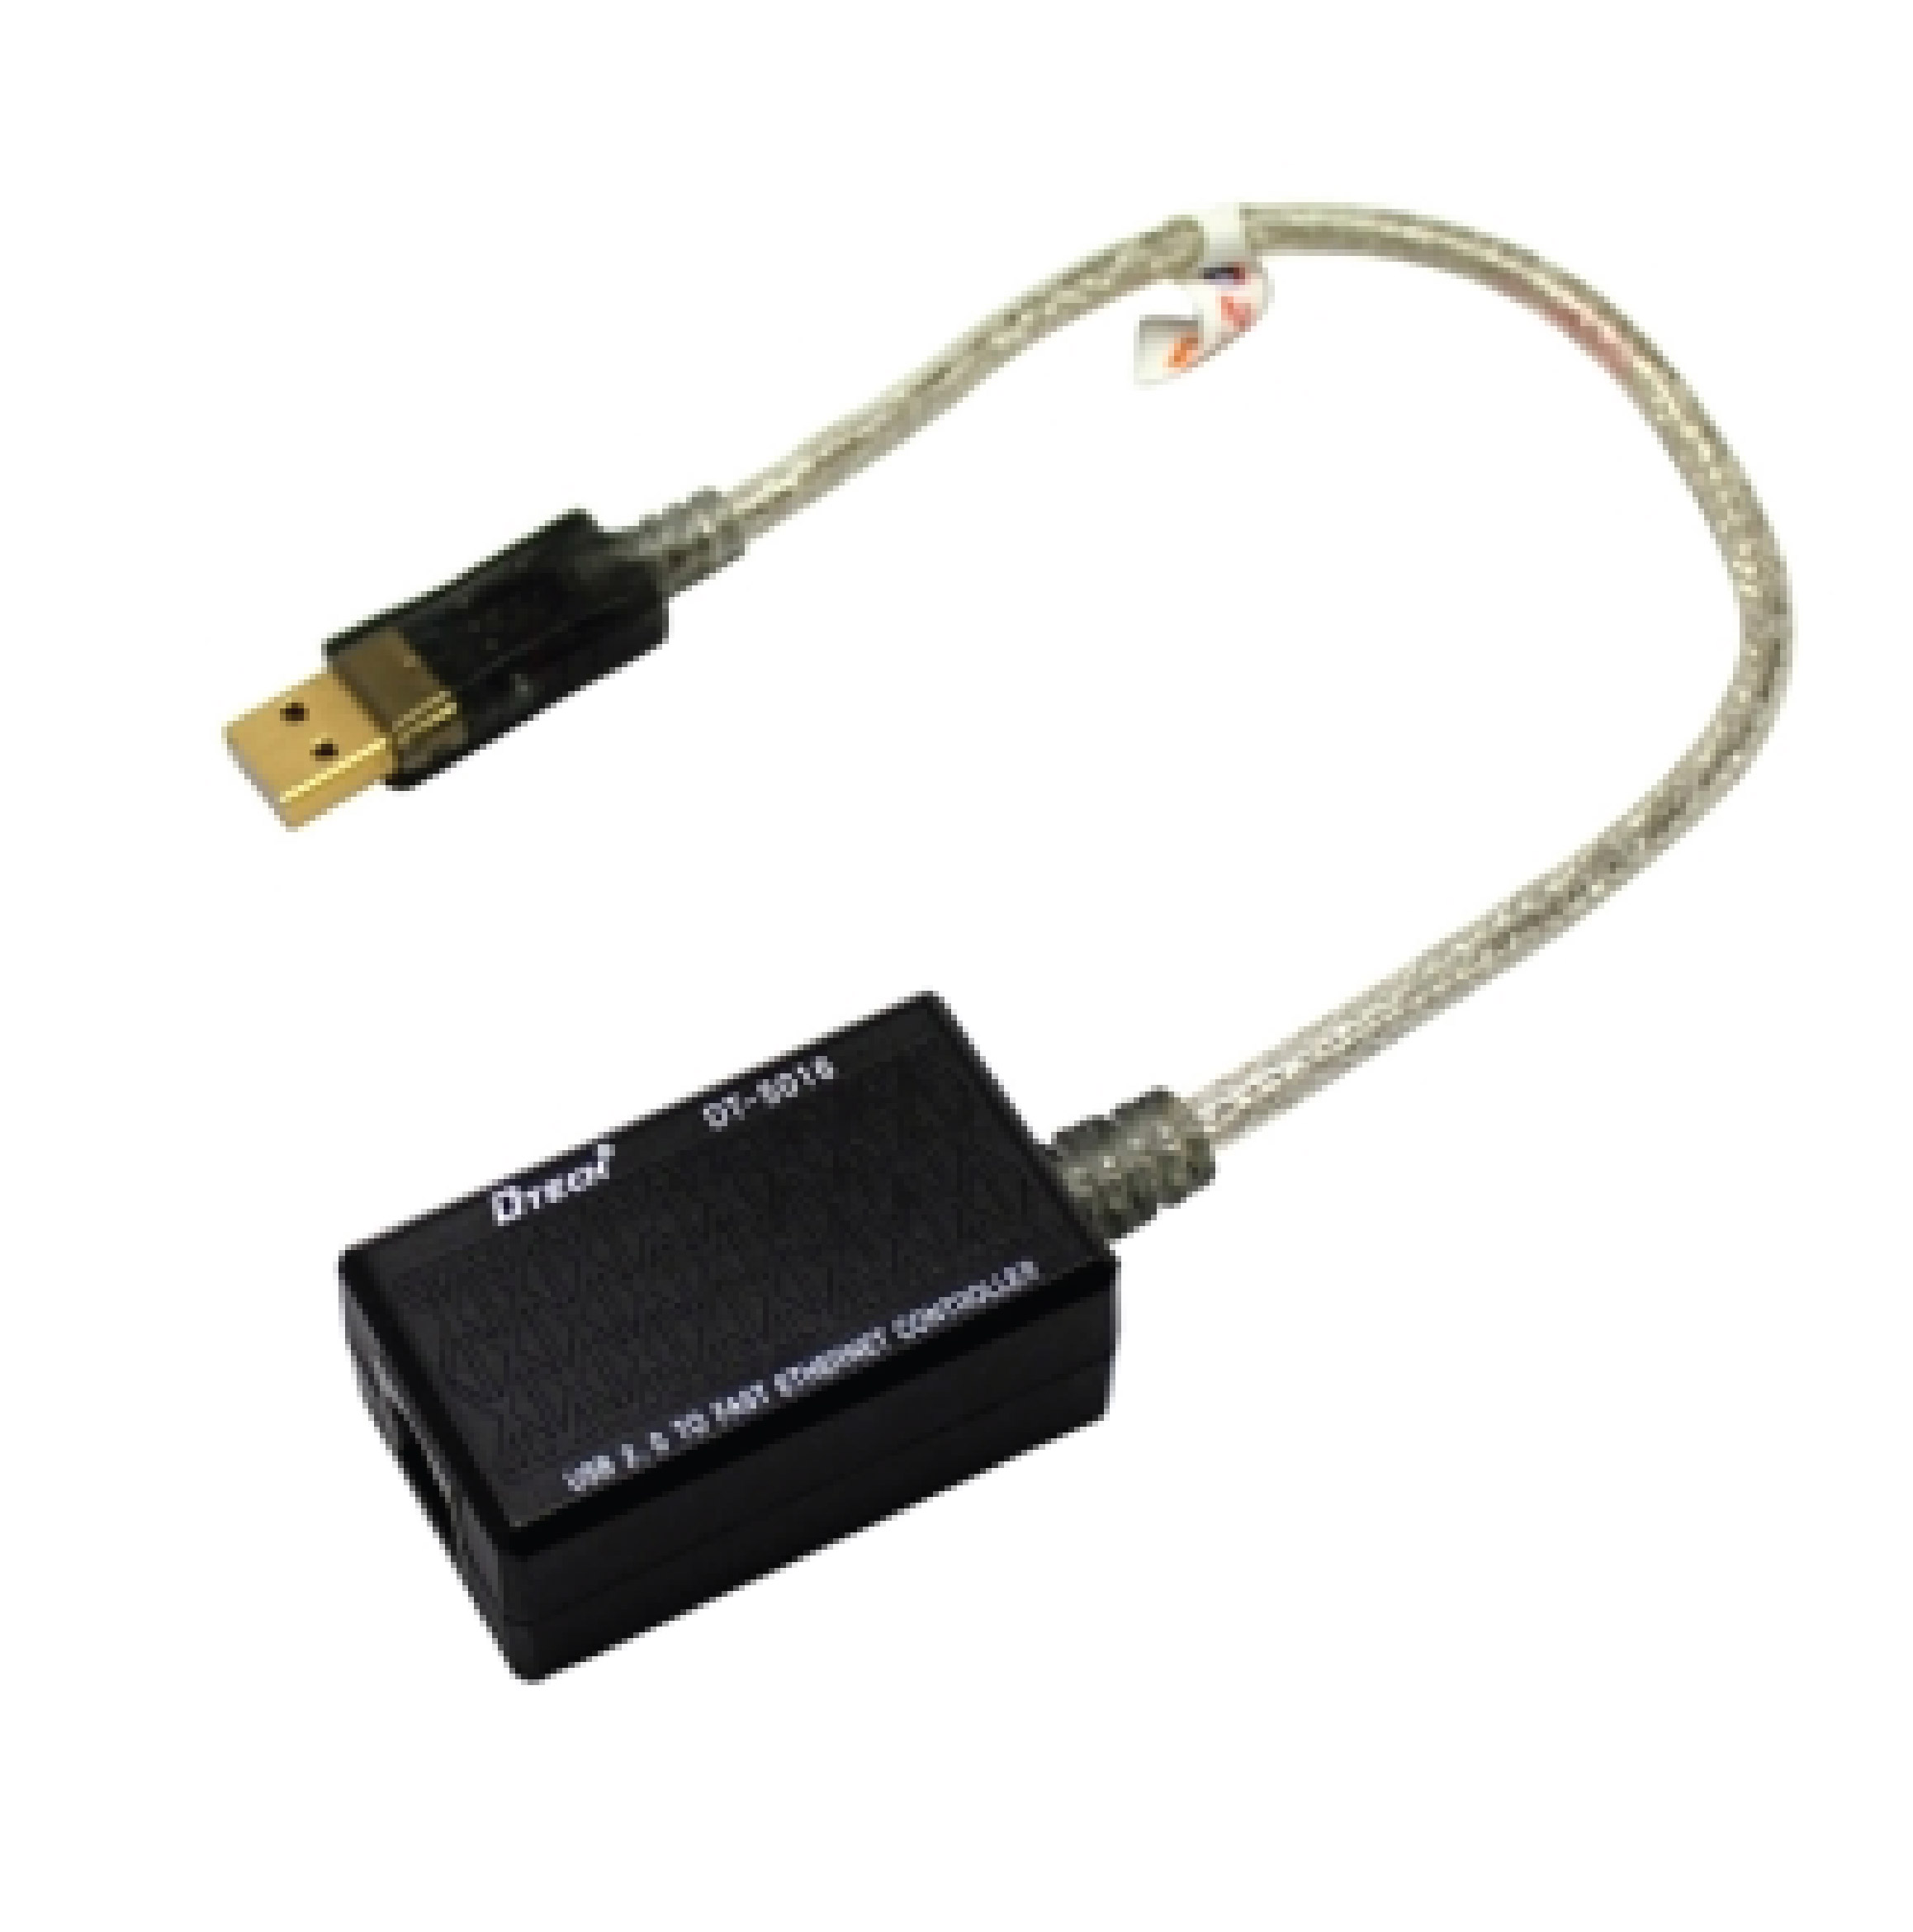 DTECH 5016 USB Network